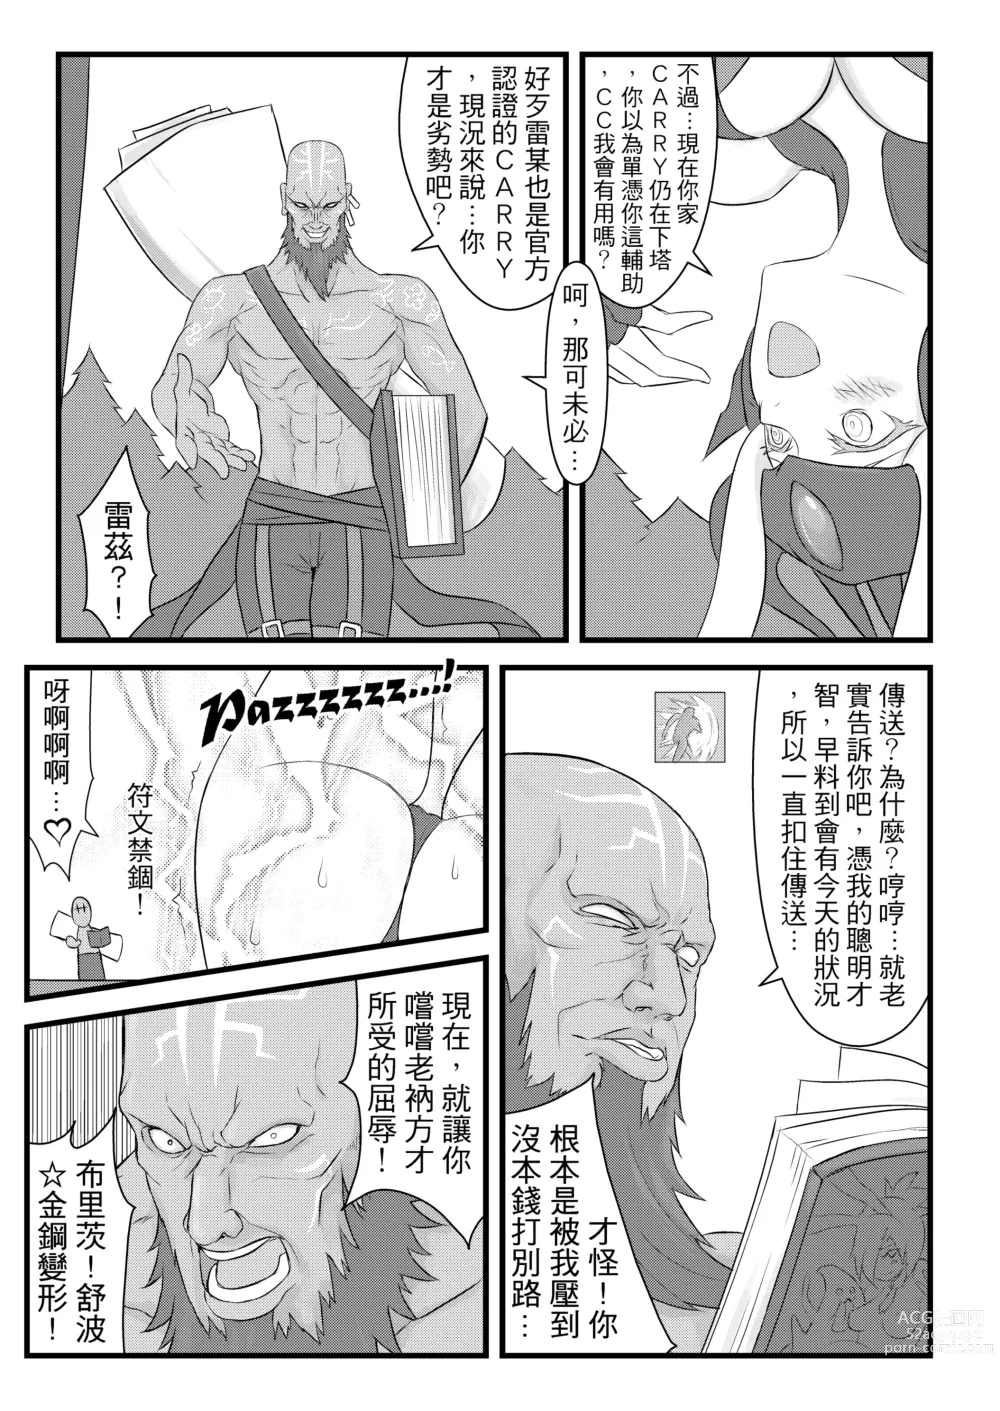 Page 6 of doujinshi ININ Renmei (uncensored)